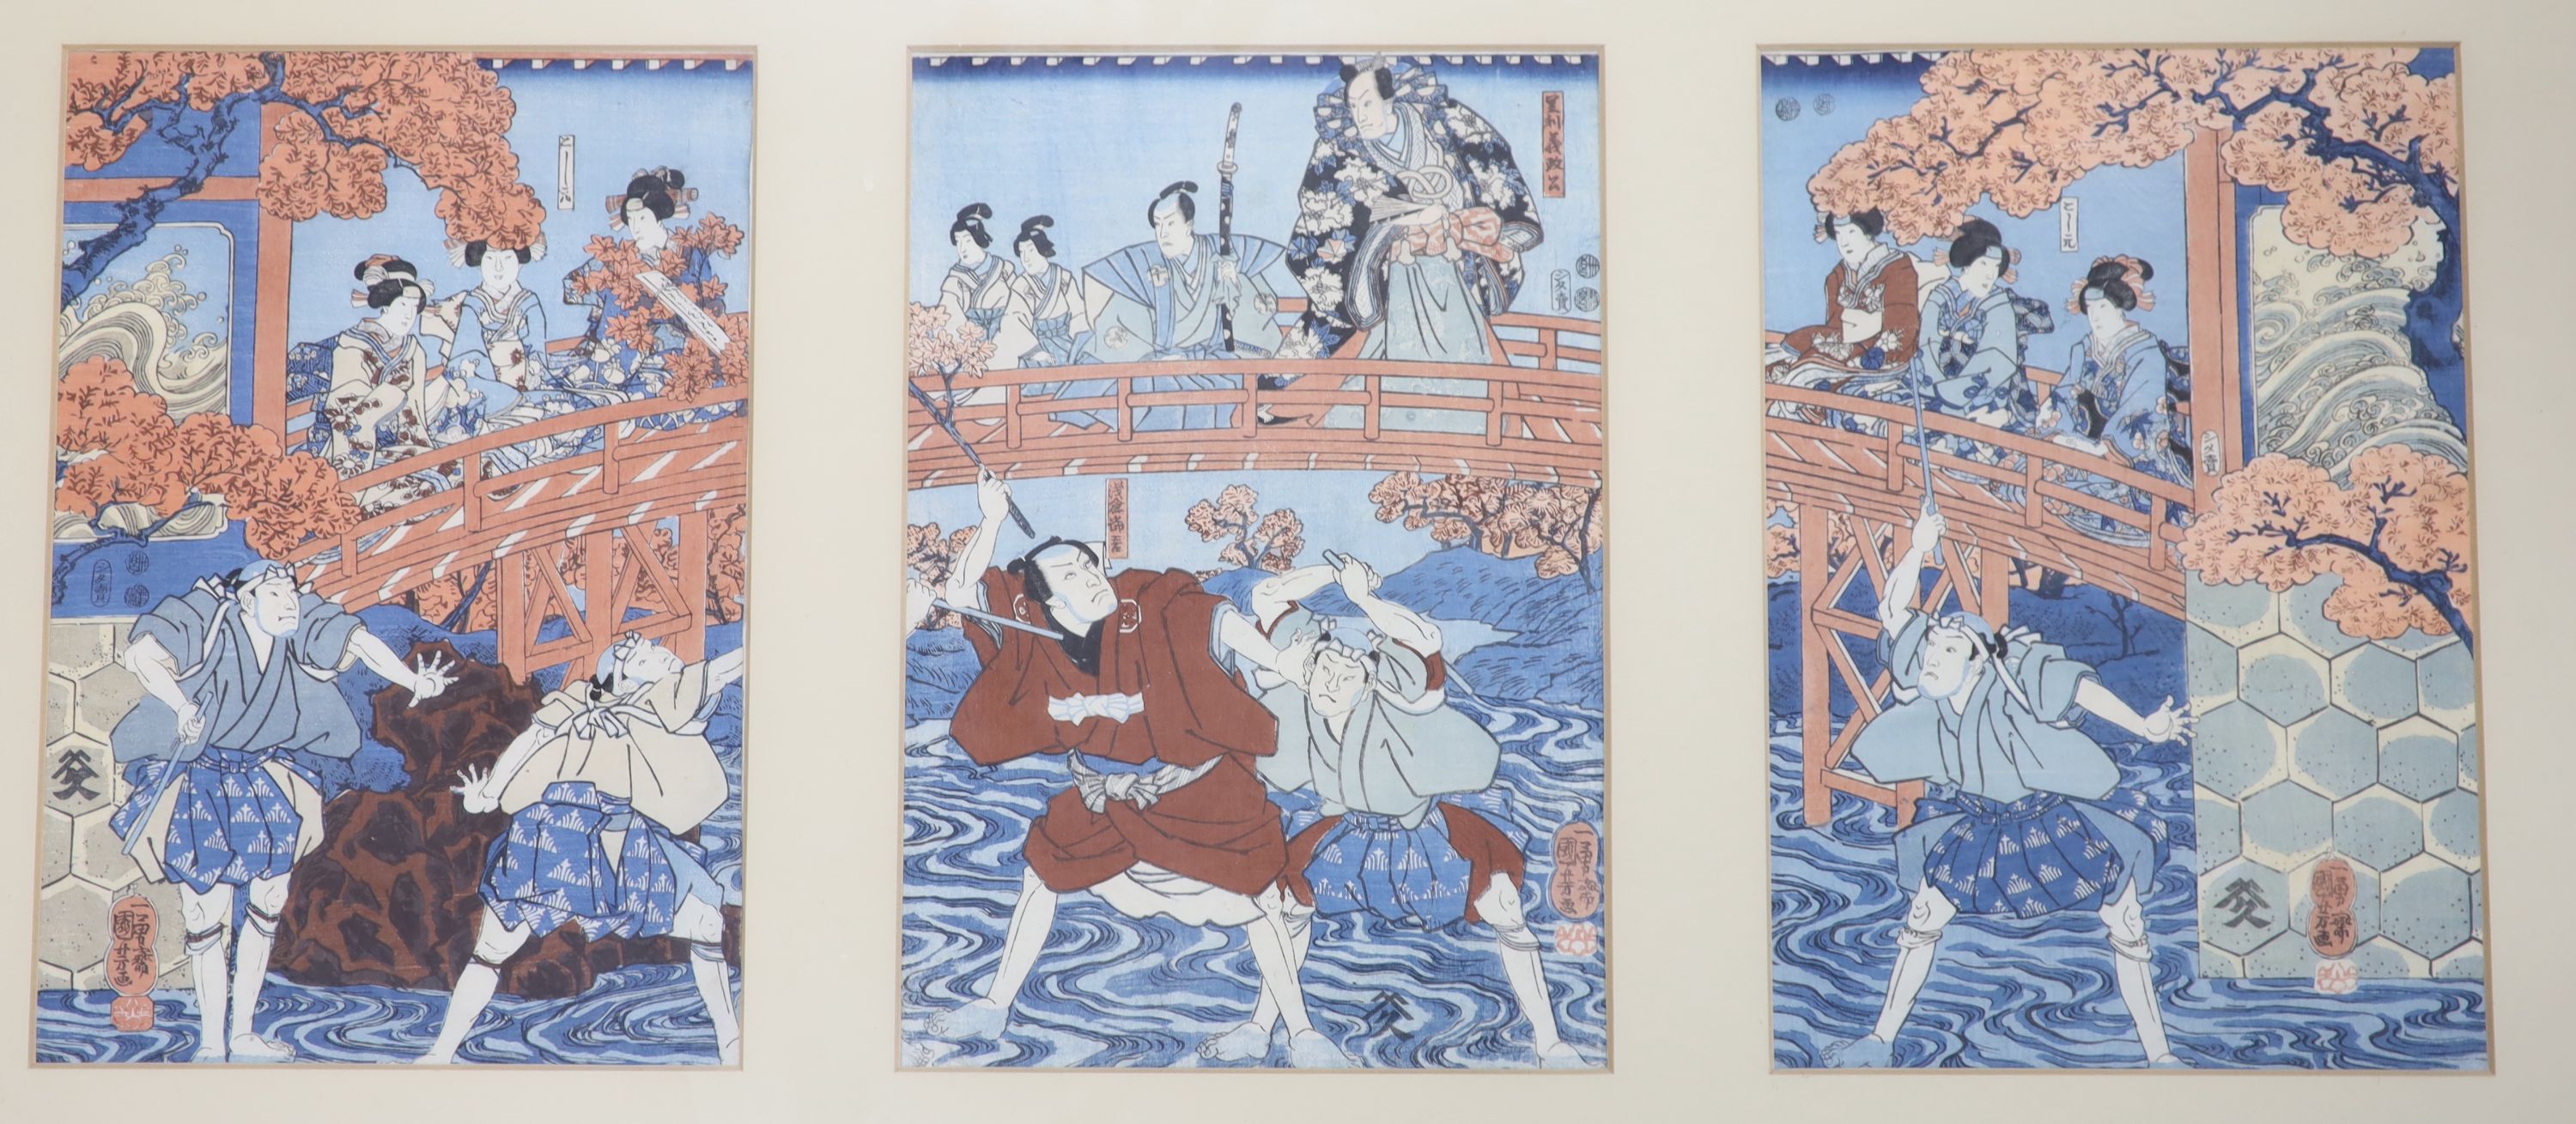 Kuniyoshi (1797-1861), three woodblock prints, Figures on a bridge, each 36 x 24cm, framed as one